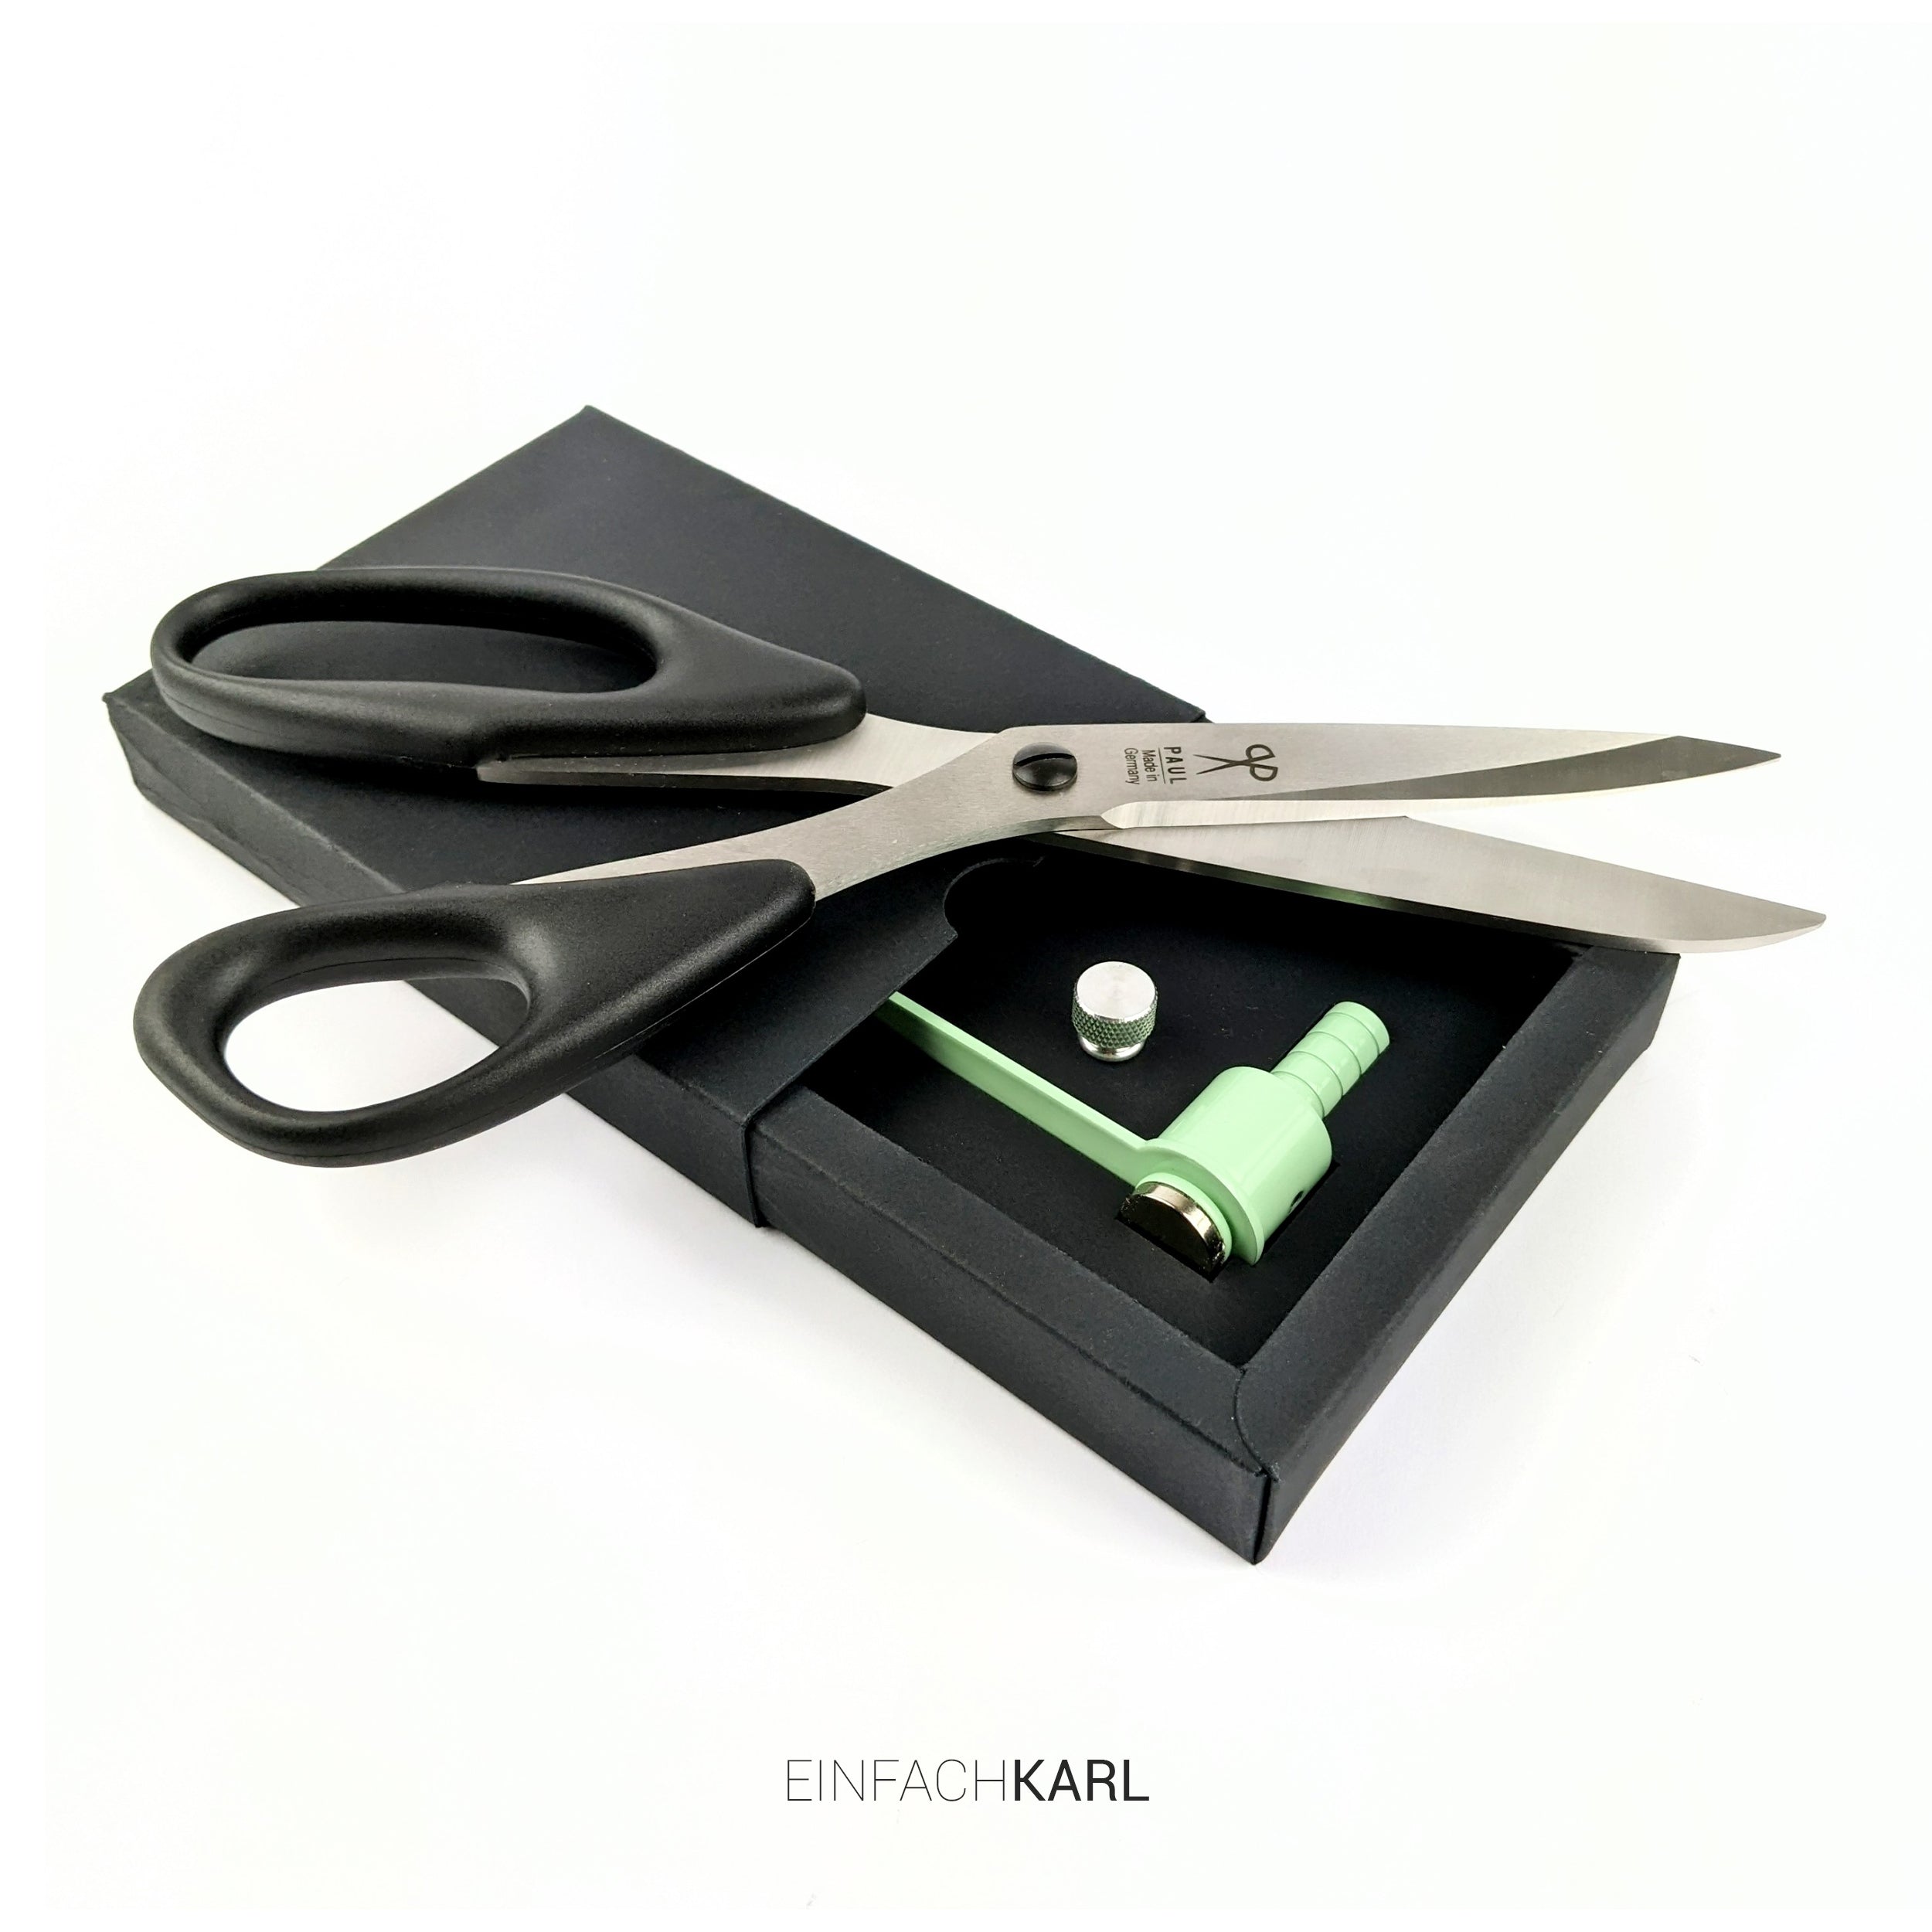 Large scissors set (color edition)